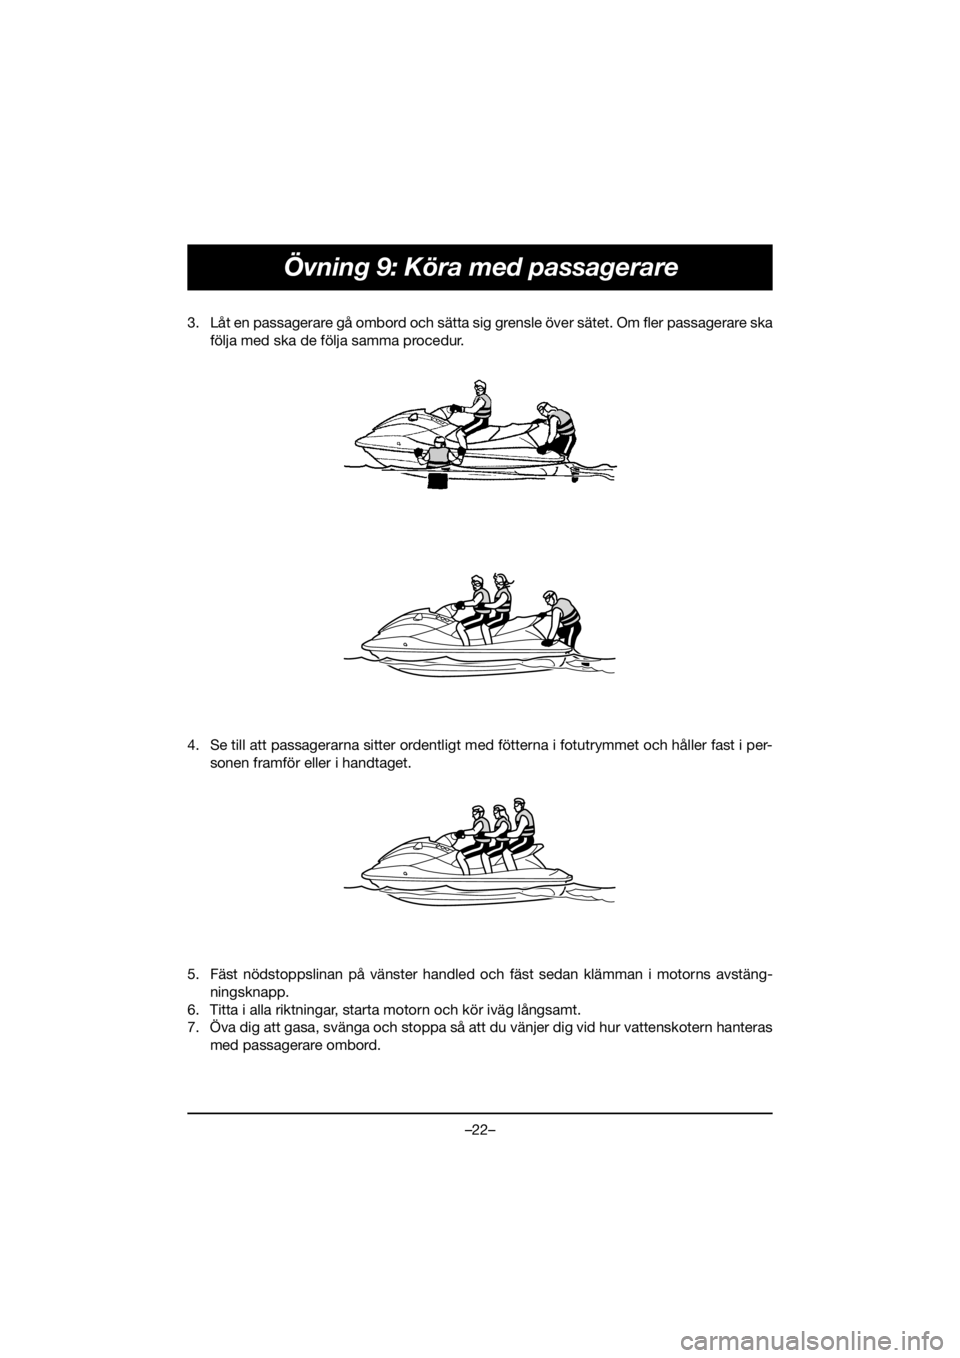 YAMAHA FJR1300 2020  Owners Manual –22–
Övning 9: Köra med passagerare
3. Låt en passagerare gå ombord och sätta sig grensle över sätet. Om fler passagerare ska
följa med ska de följa samma procedur. 
4. Se till att passag